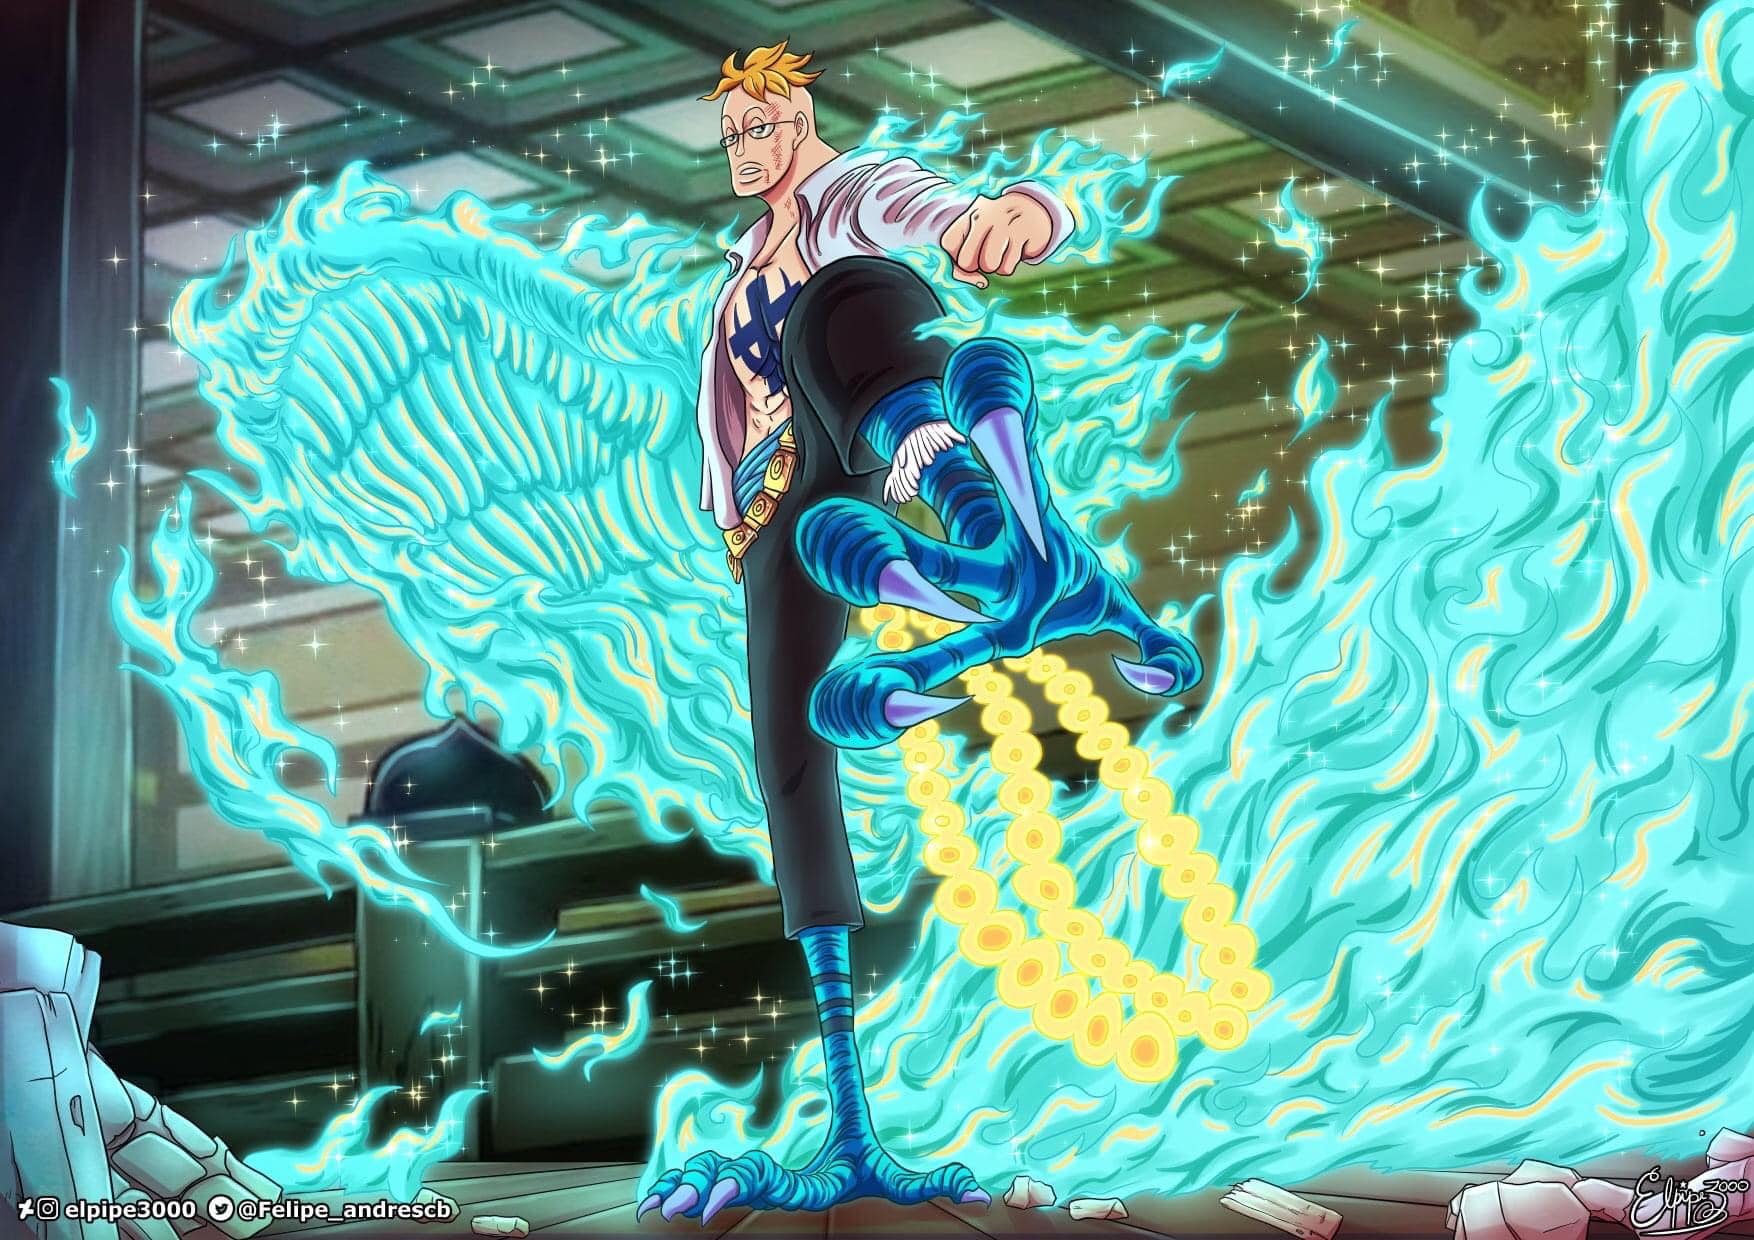 Chiêm ngưỡng hình ảnh Luffy Gear 2, trang bị võ công mới giúp Luffy đánh bại những kẻ thù khó chịu. Với khả năng tăng cường sức mạnh và tốc độ chiến đấu, Luffy trở nên vô cùng nguy hiểm. Xem thêm về chiến thuật đánh chặn của Luffy trong One Piece.